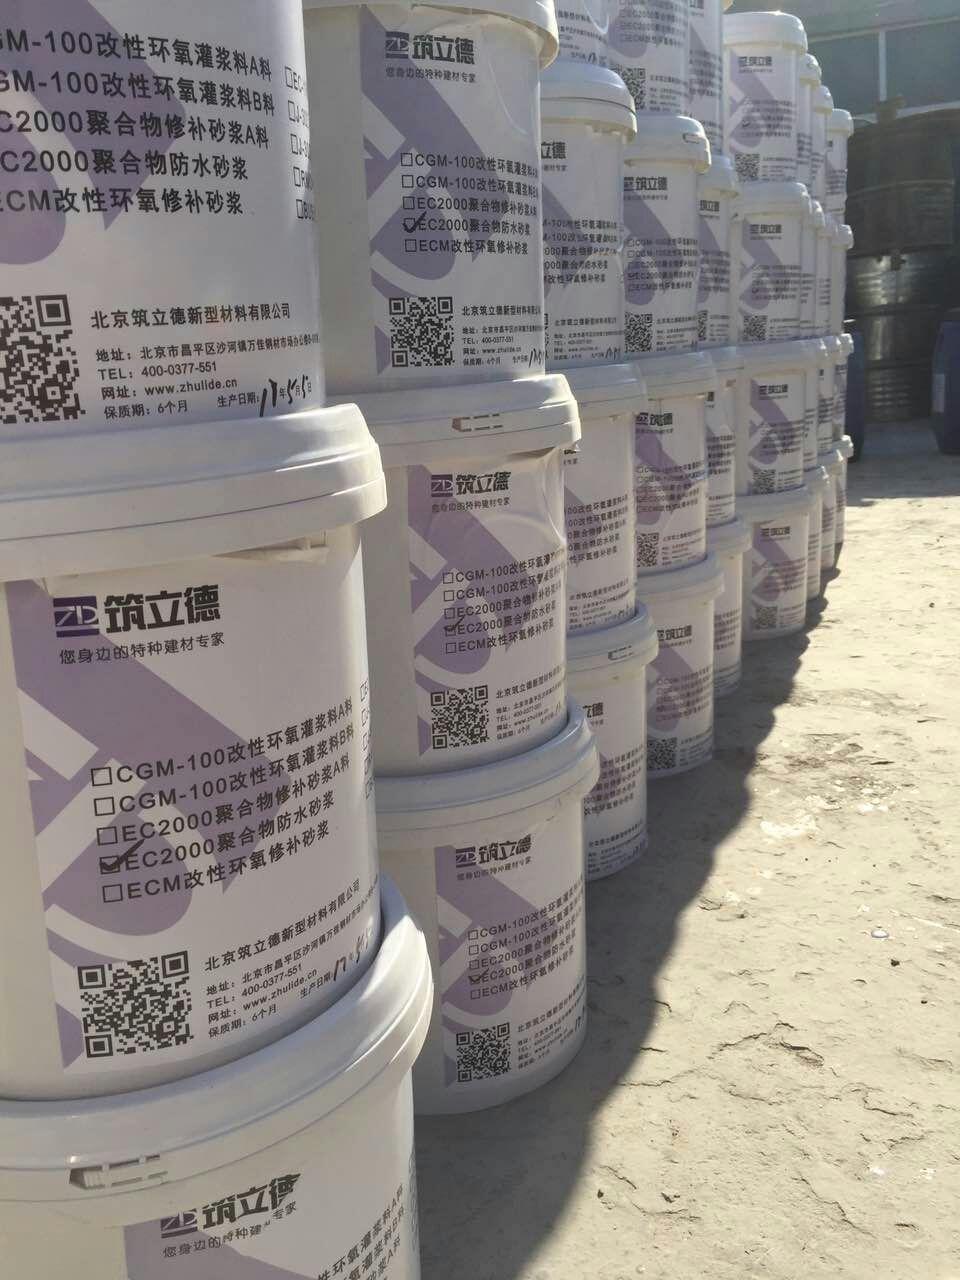 改性环氧树脂粘钢胶 北京粘钢胶厂家 安徽粘钢胶厂家 粘钢胶价格